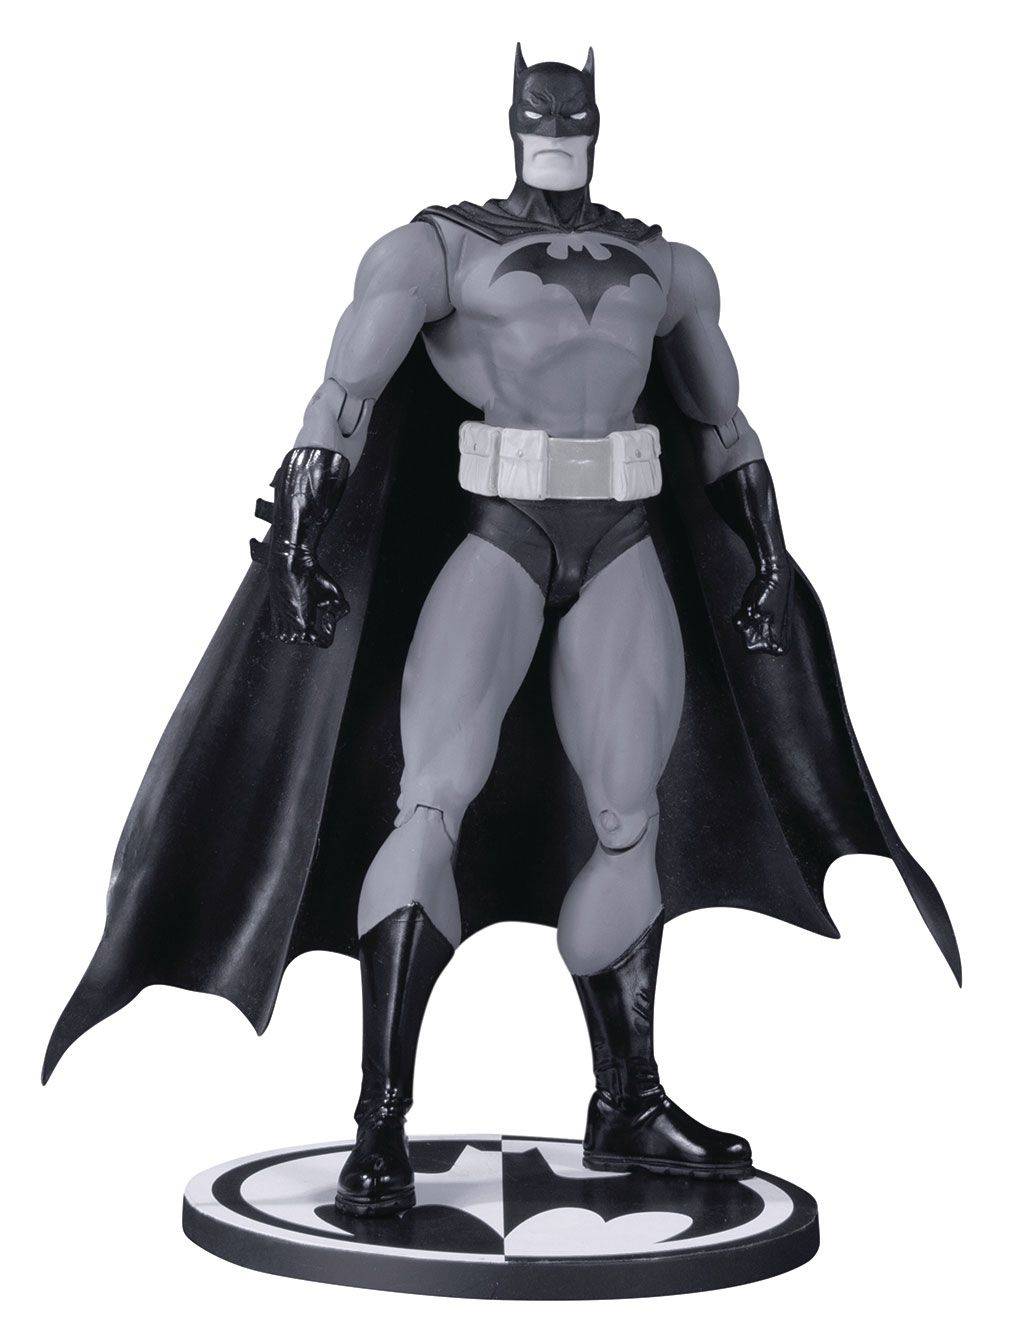 Action figures - Batman Black & White figurine Hush Batman by Jim Lee 